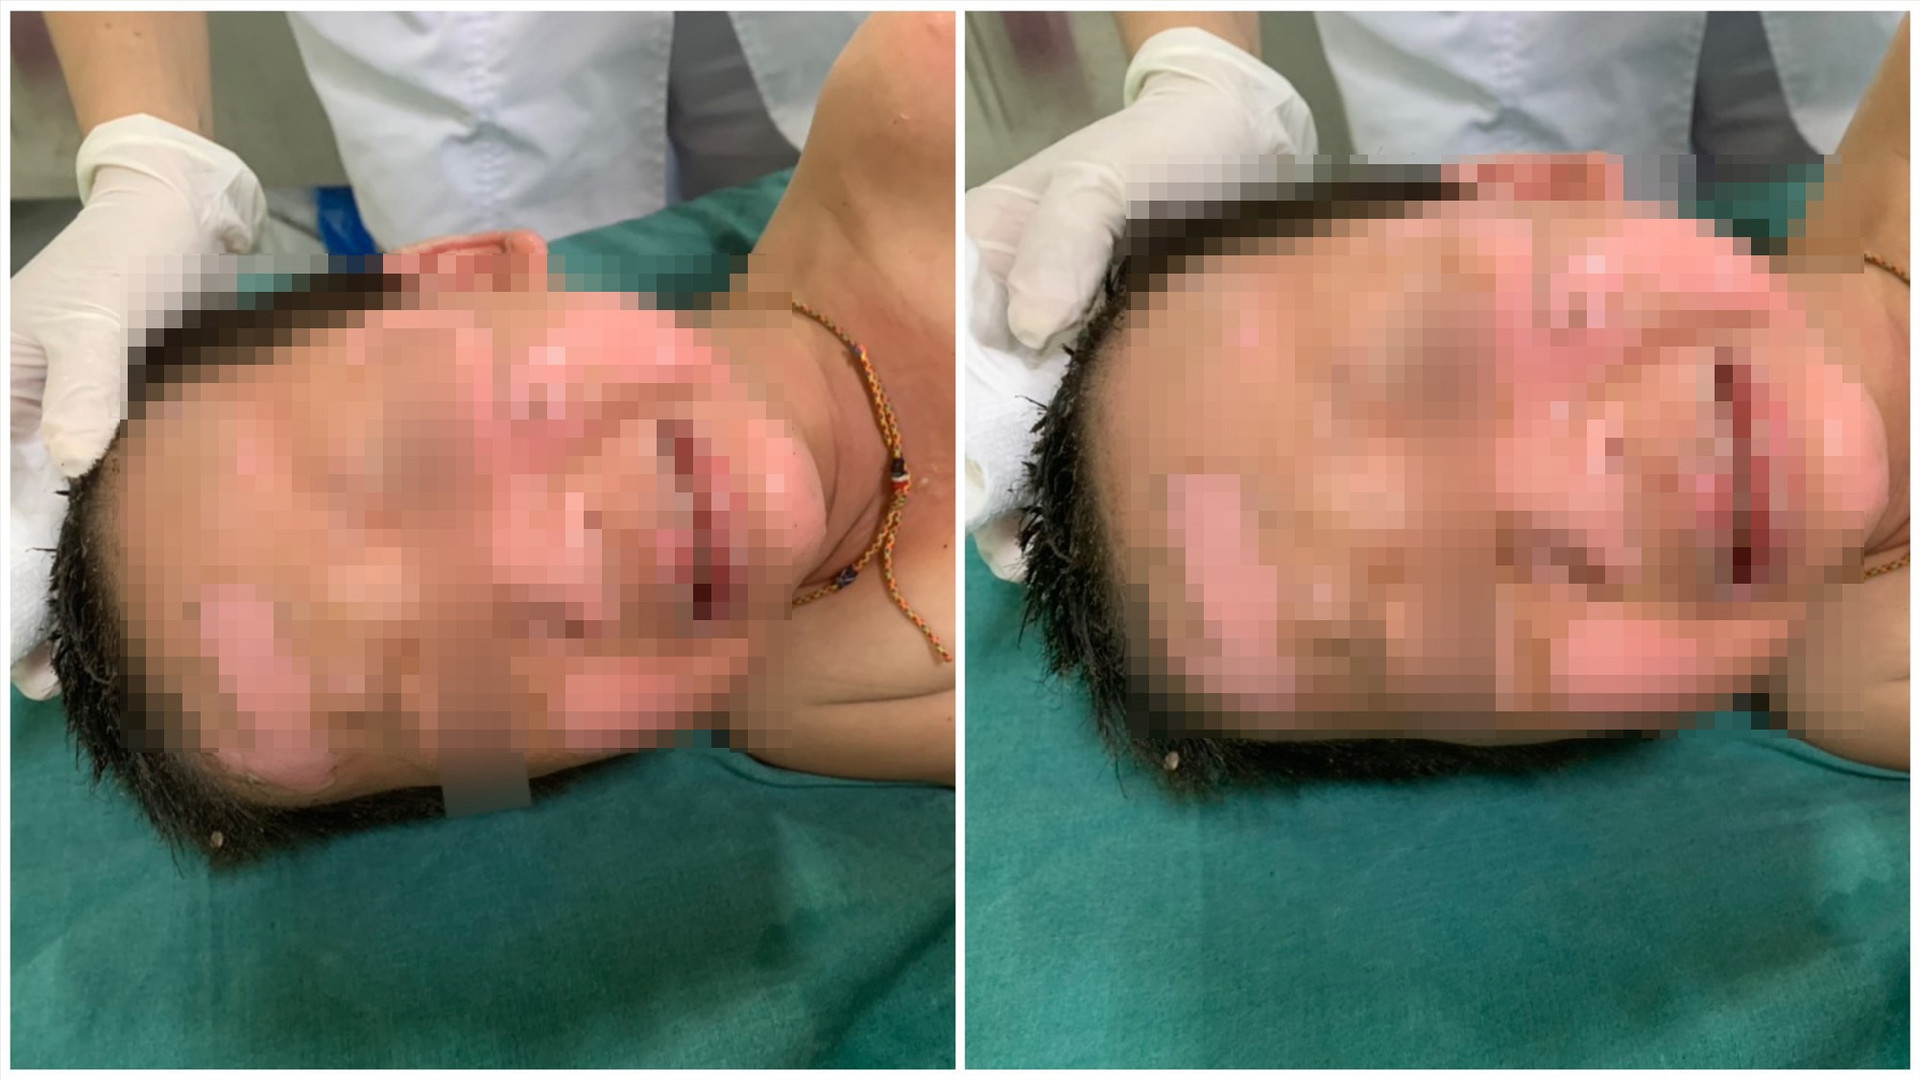 Bệnh nhi T.T.S. (4 tuổi, xã Ninh Phước, huyện Nông Sơn) bị bỏng vùng đầu, mặt và cổ ngay khi nhập viện. Ảnh: QUẢNG CHƯƠNG